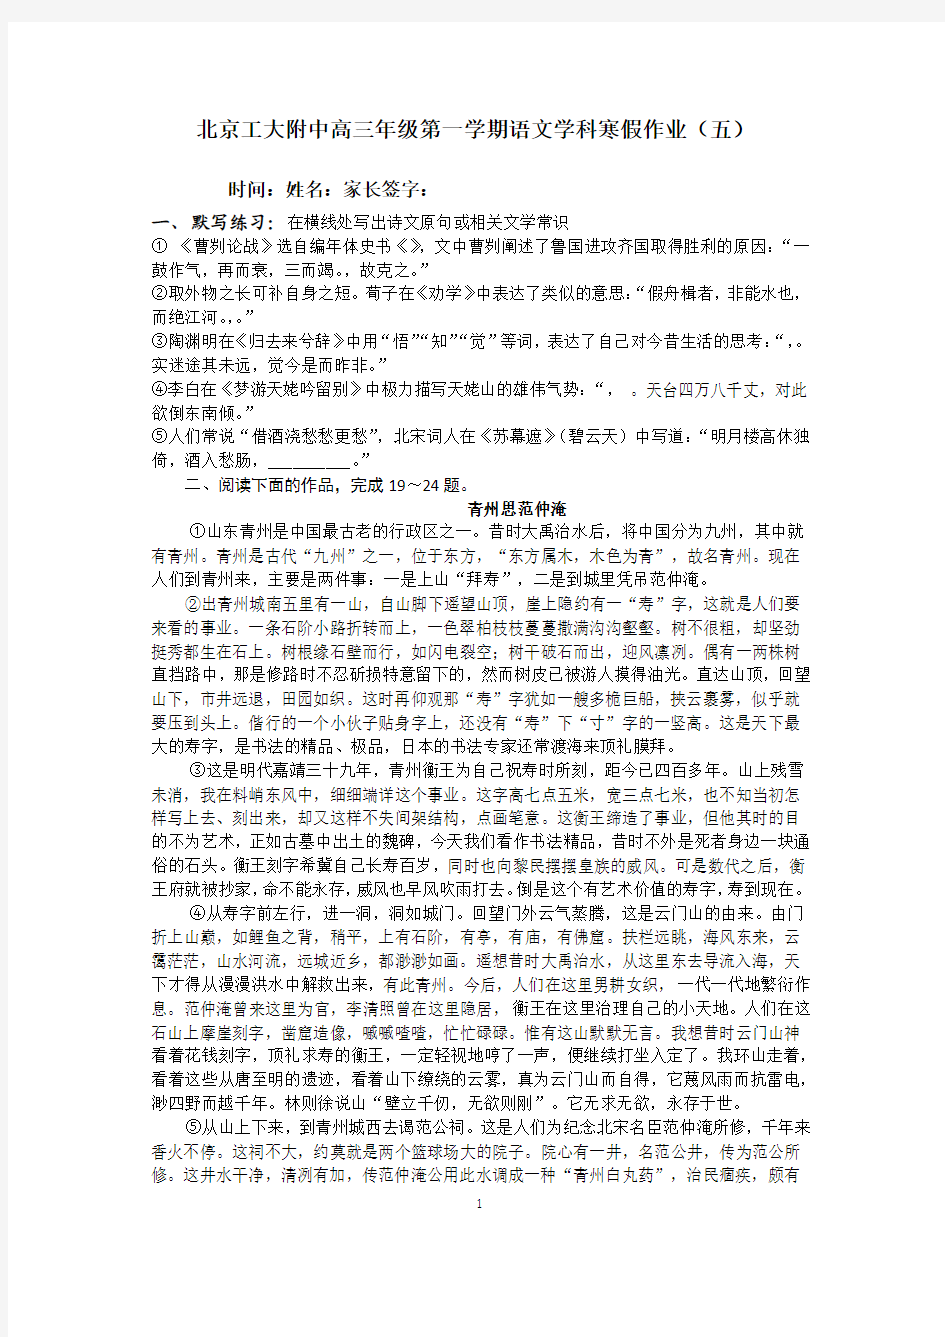 北京工大附中高三年级第一学期语文学科寒假作业5